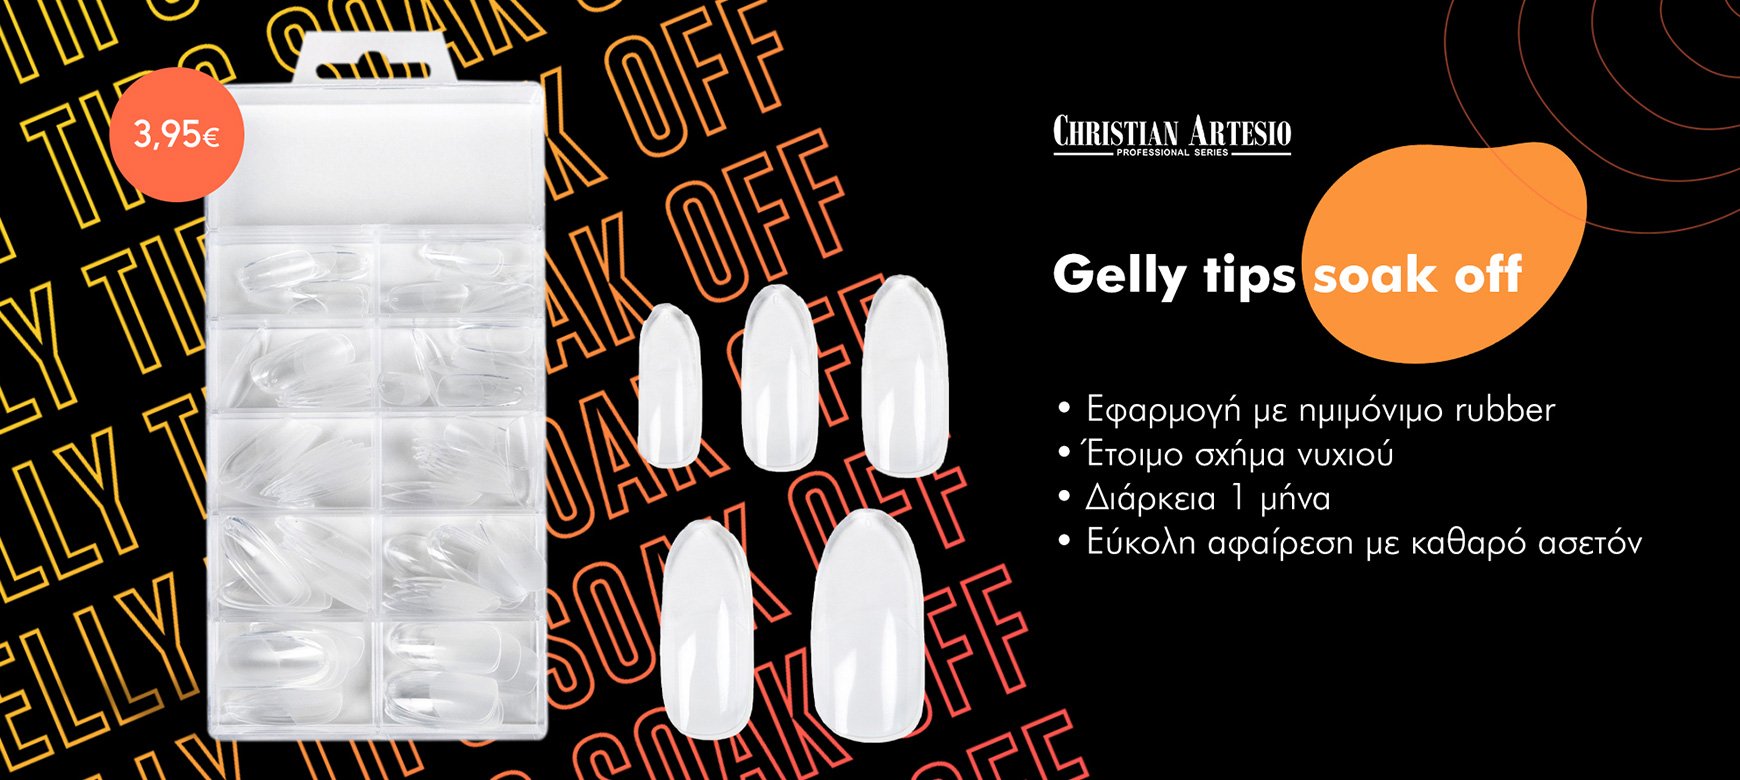 Επιμήκυνση νυχιού με gelly tips christianartesio how to post